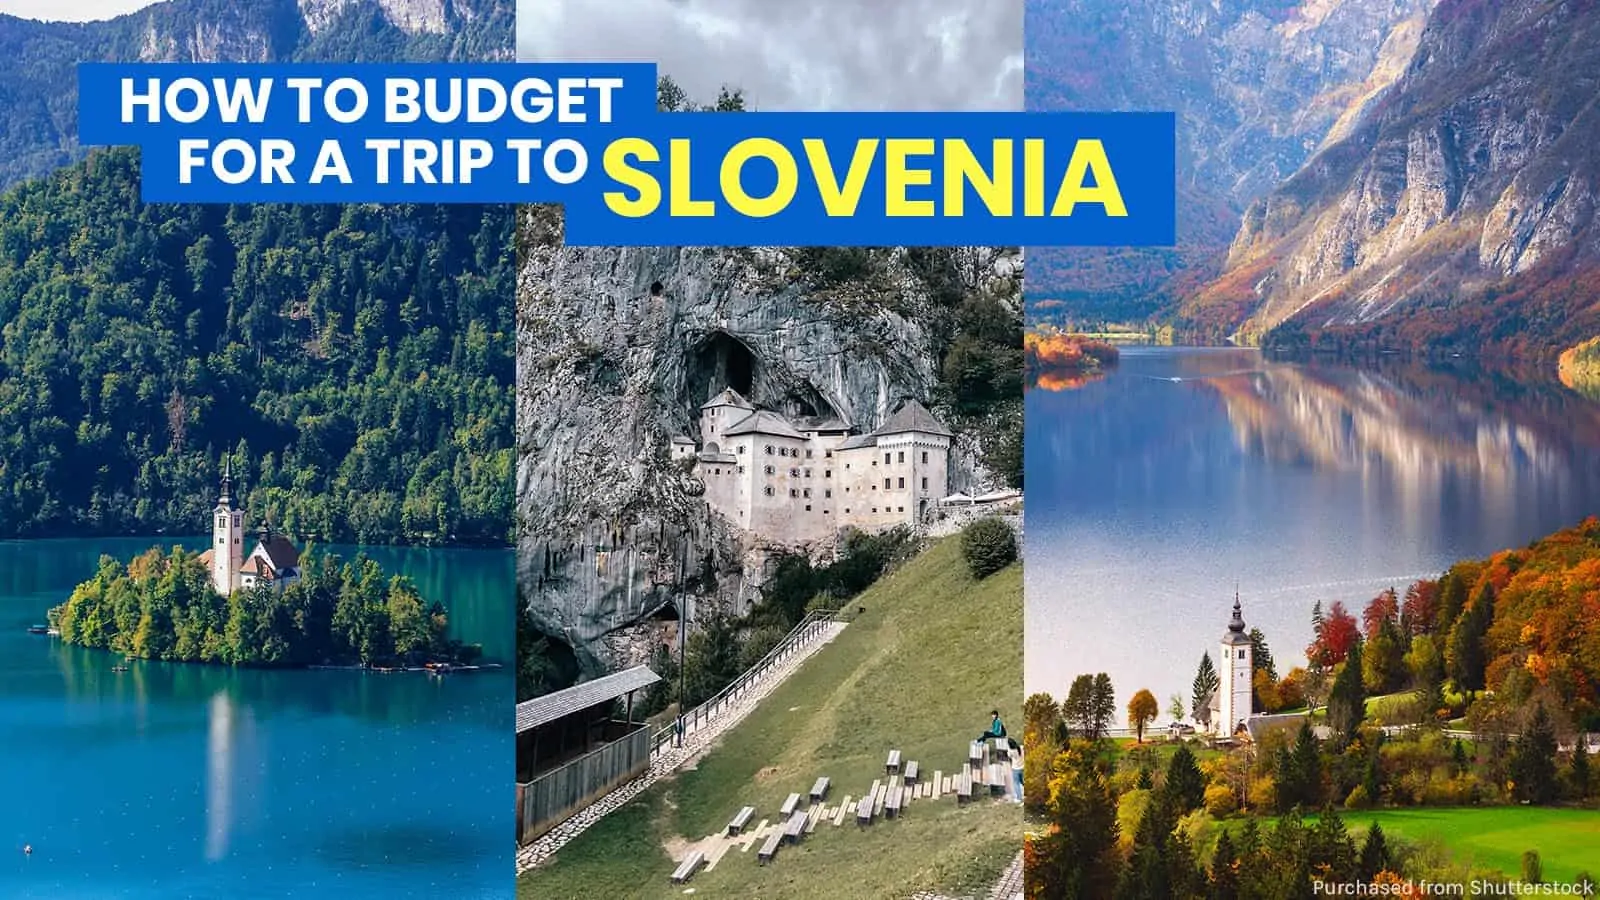 斯洛文尼亚旅游指南:卢布尔雅那旅游路线和预算